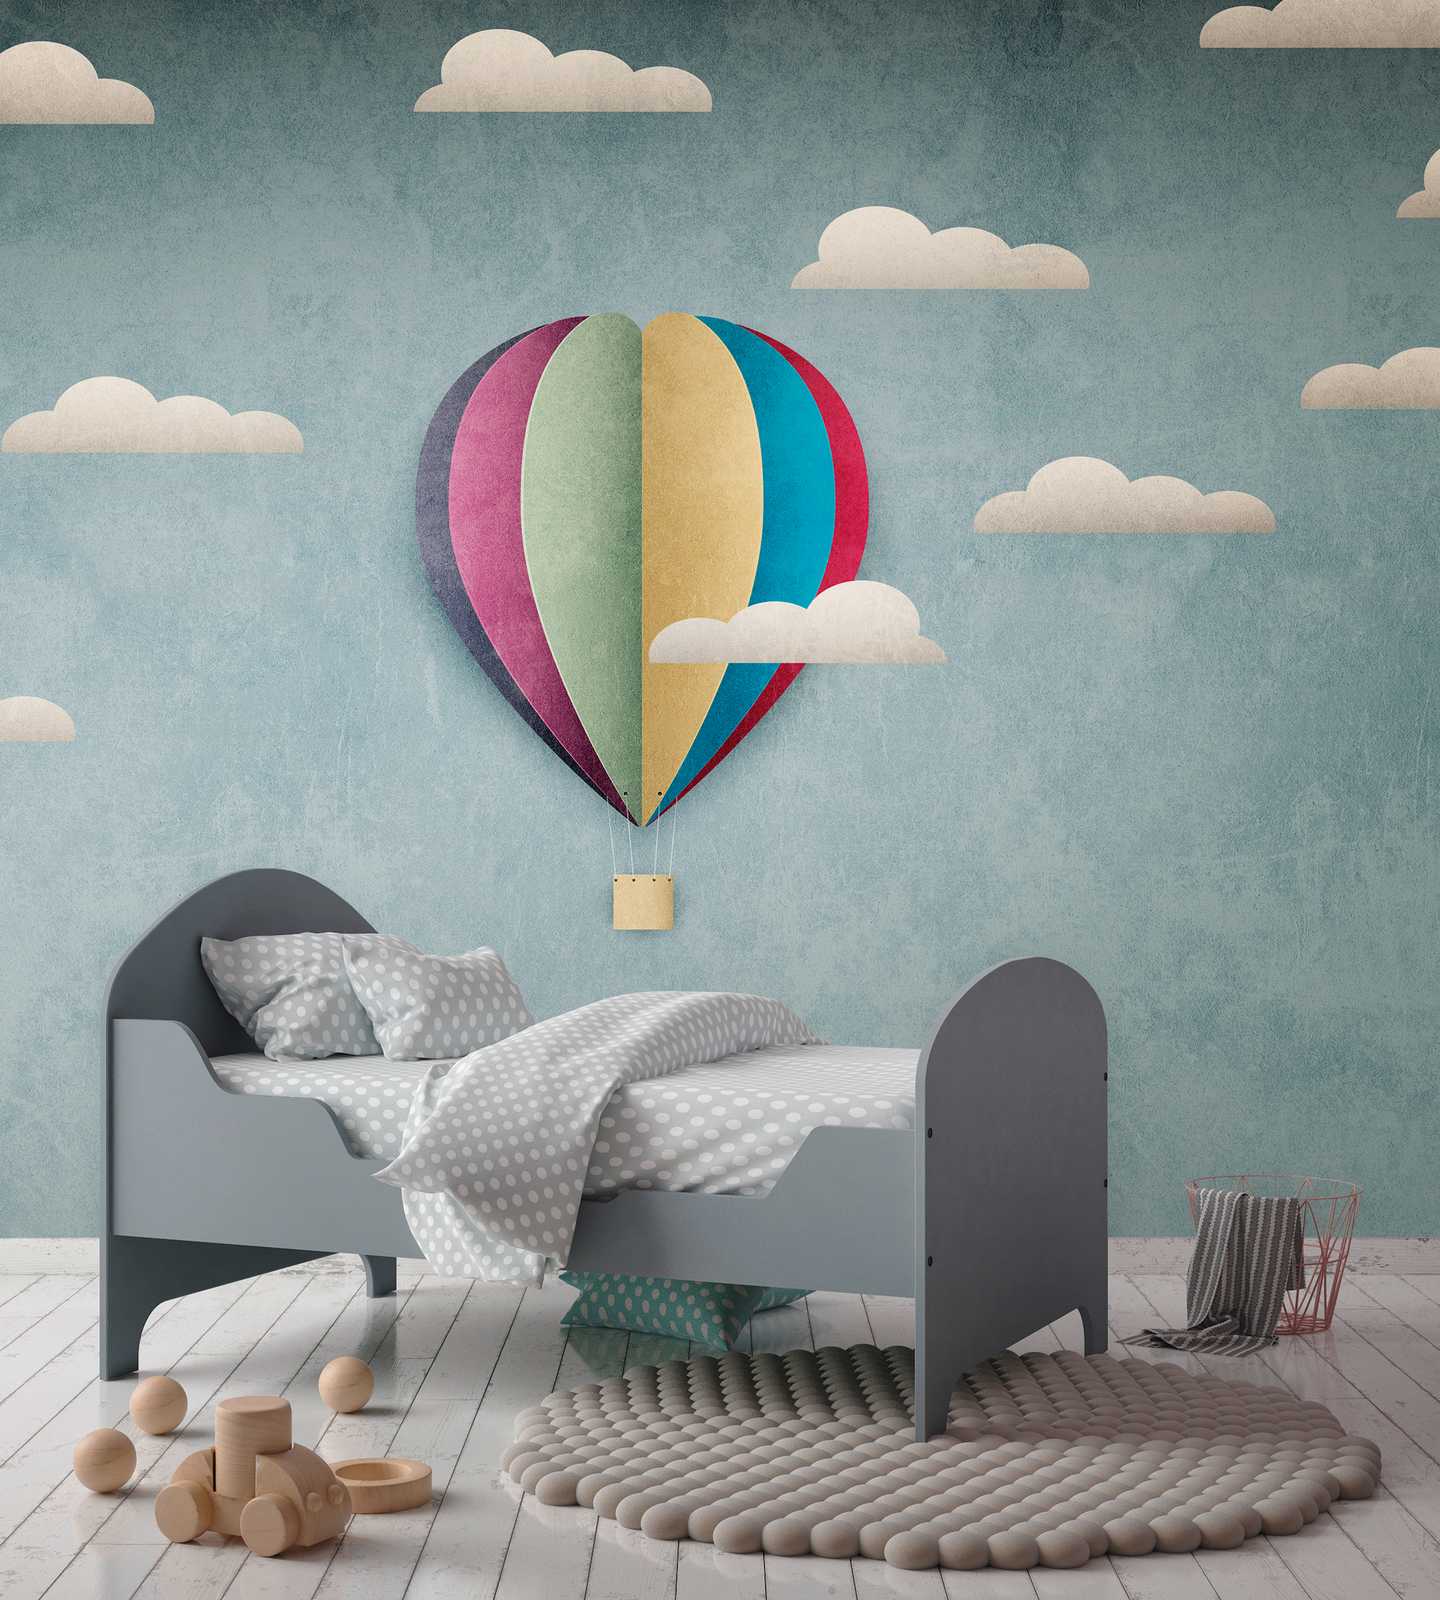             Wallpaper novelty | motif wallpaper hot air balloon & cloudy sky for kids
        